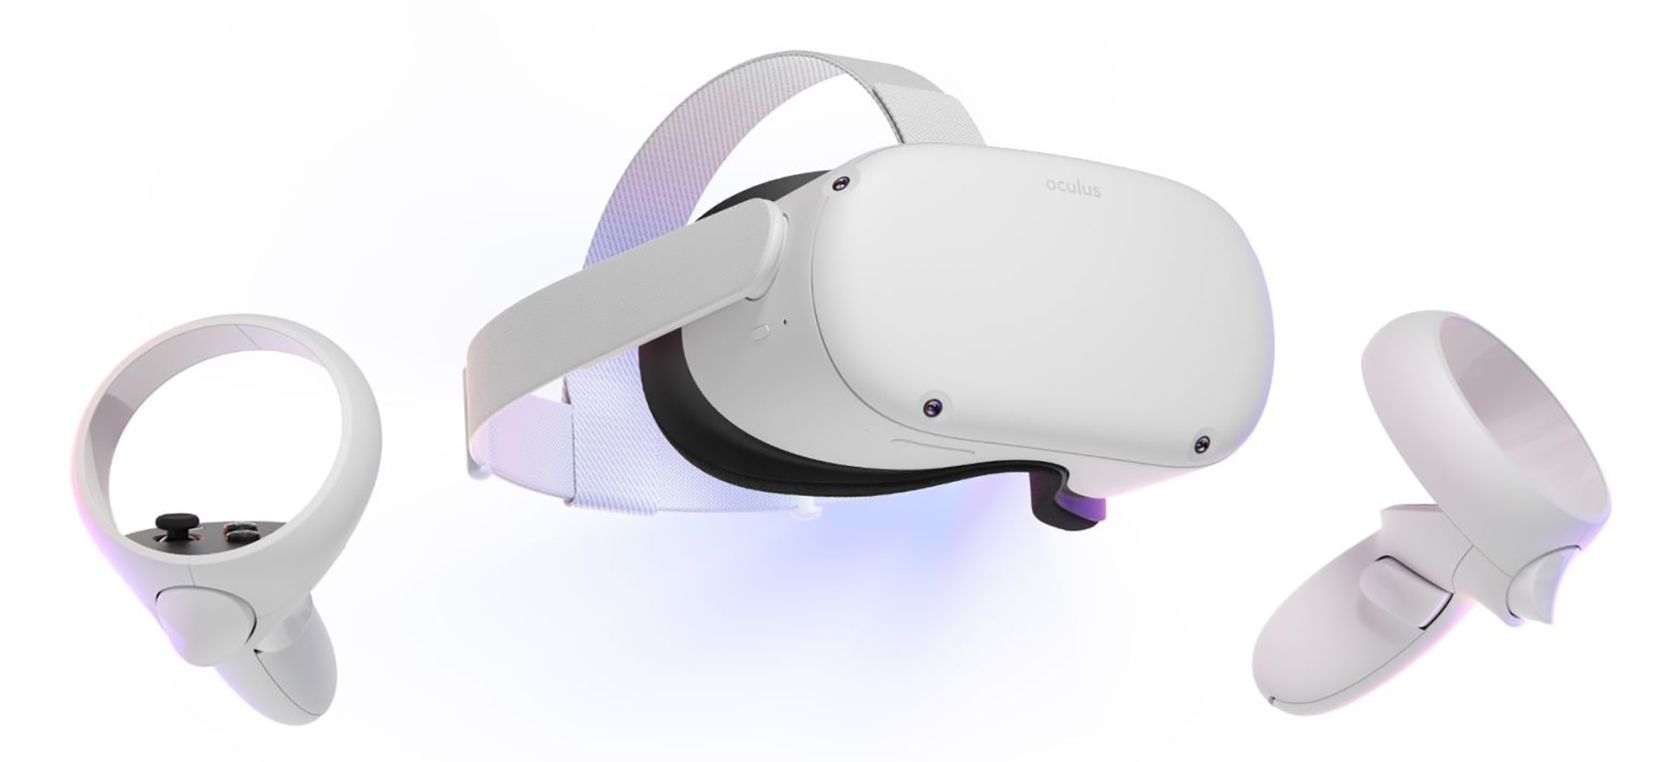 Meta sube el precio de su “headset” de Realidad Virtual